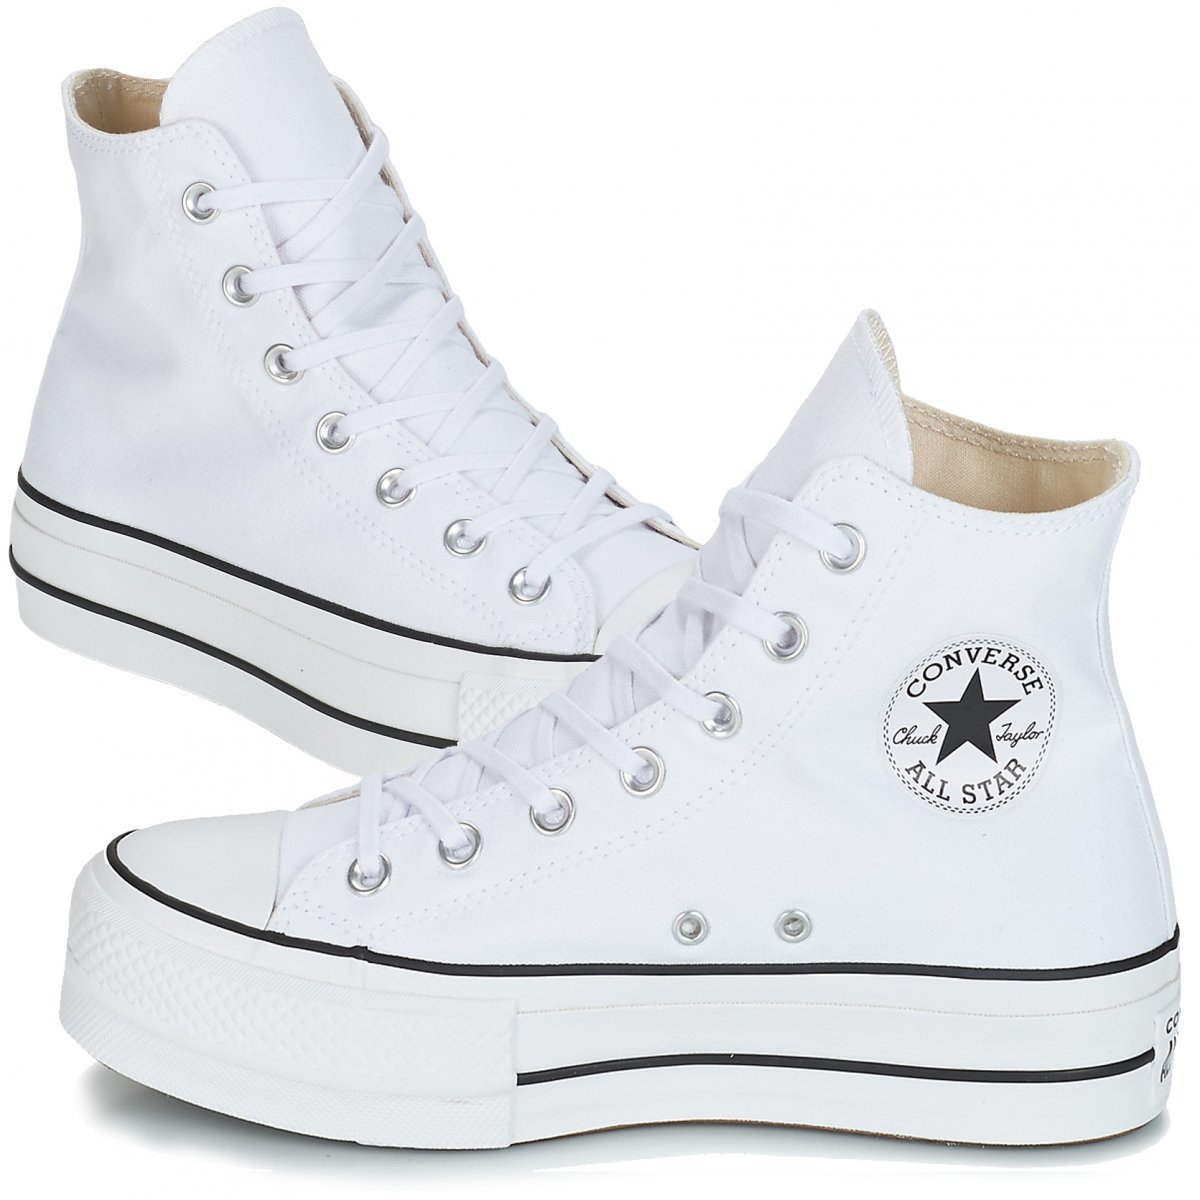 Converse buty trampki damskie białe wysokie platforma 560846C 37